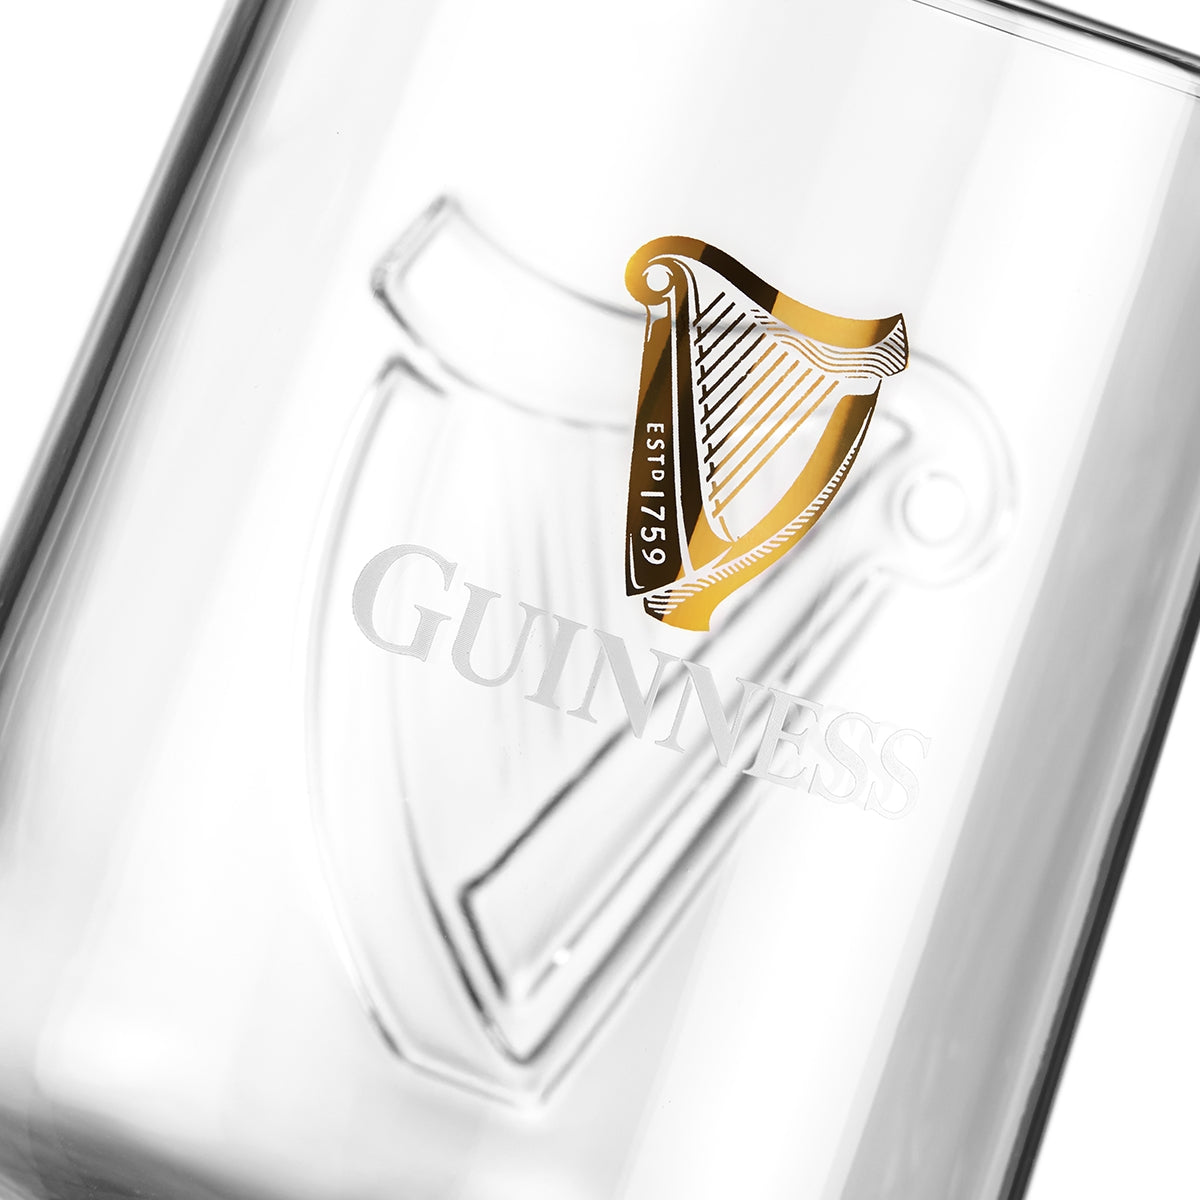 Guinness Embossed Stem Glass 6 Pack with Guinness logo.